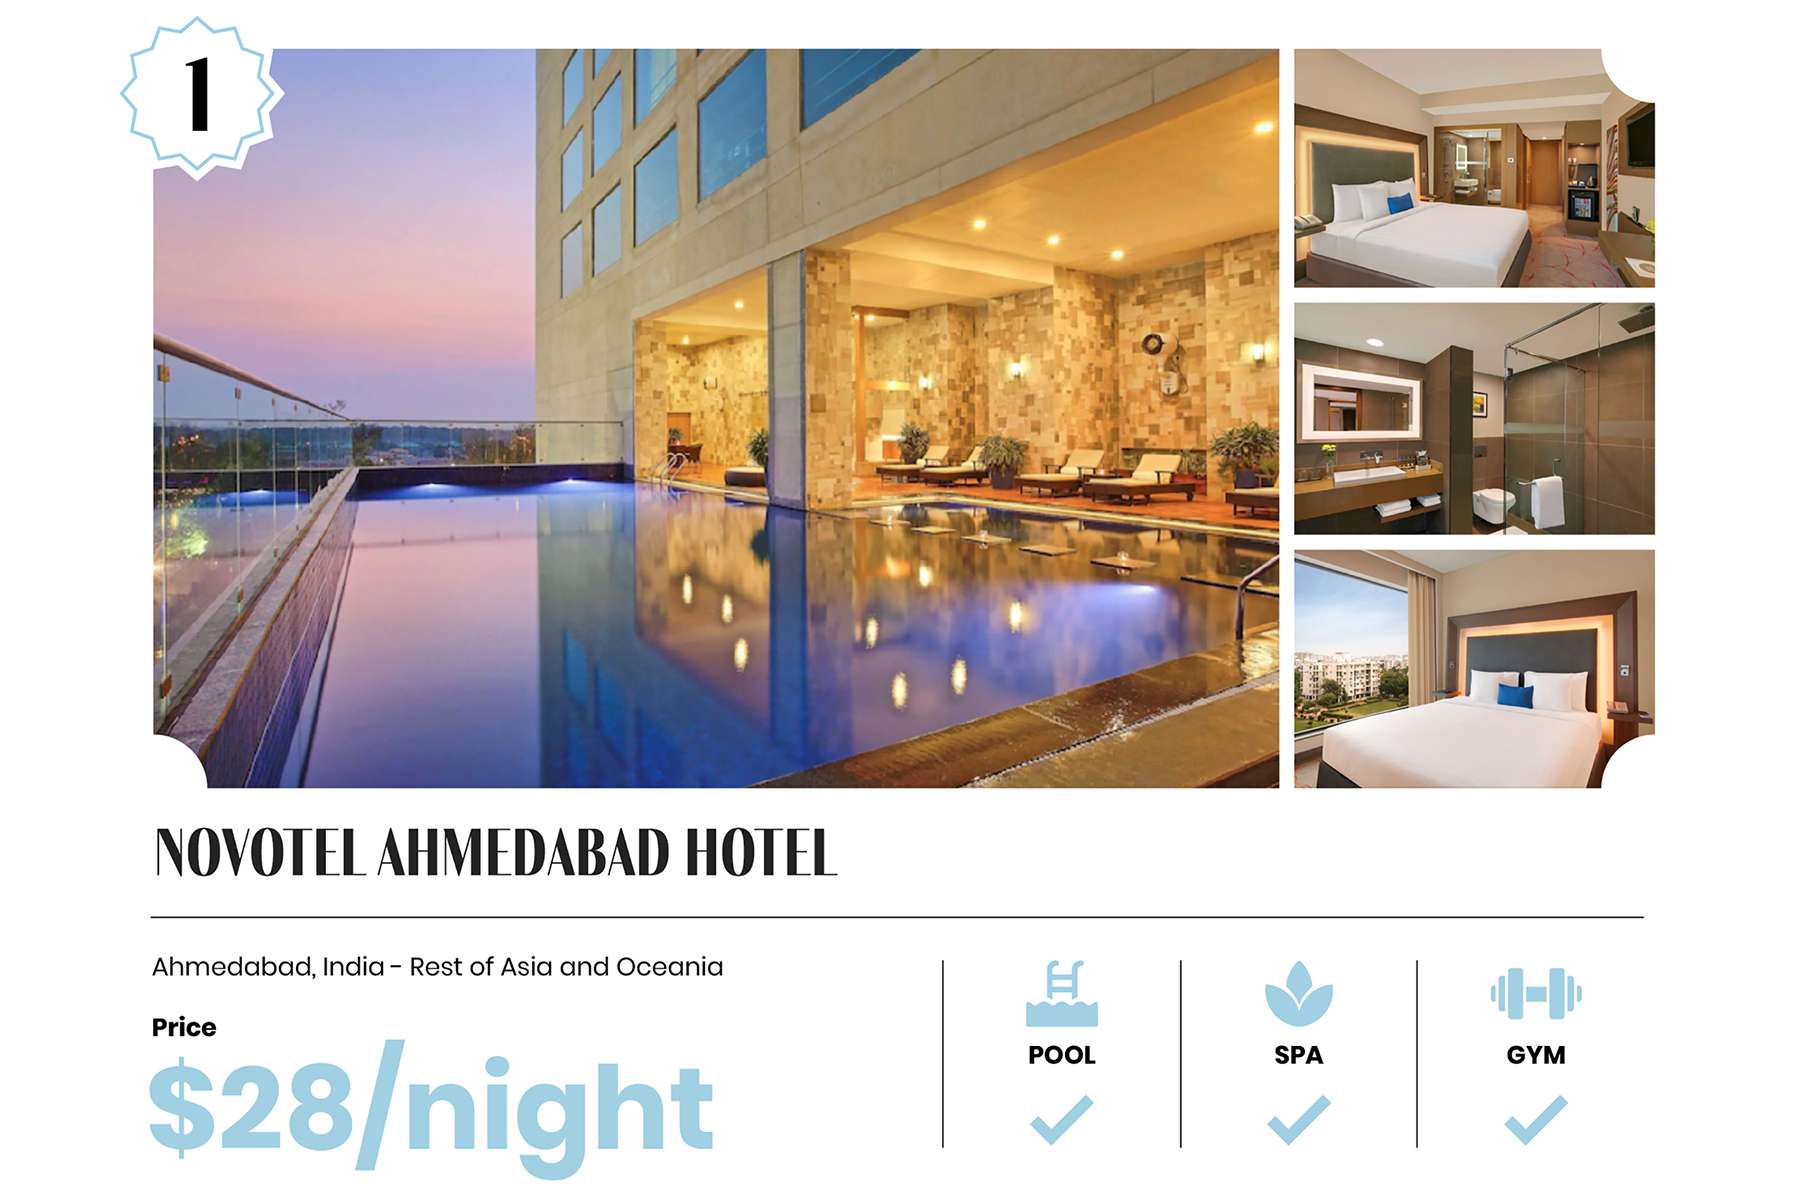 Novotel Ahmedabad Hotel, le 1er hôtel 5 étoiles le moins cher au monde